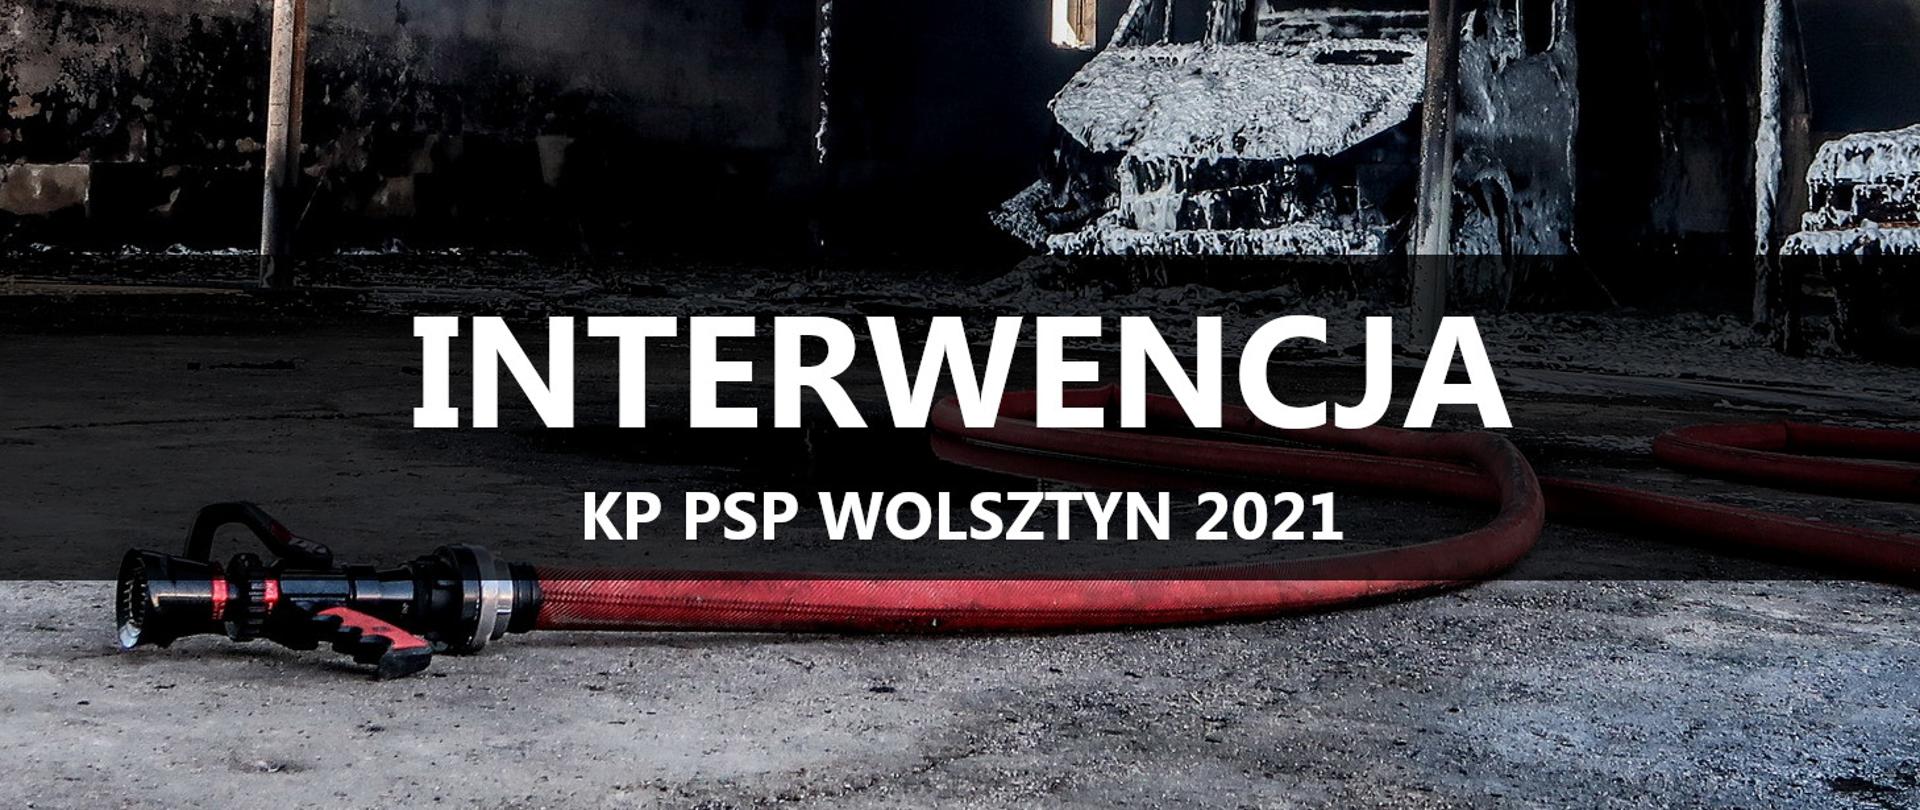 Prądownica z wężem, z tyłu spalone samochody, napis INTERWENCJA KP PSP WOLSZTYN 2021.